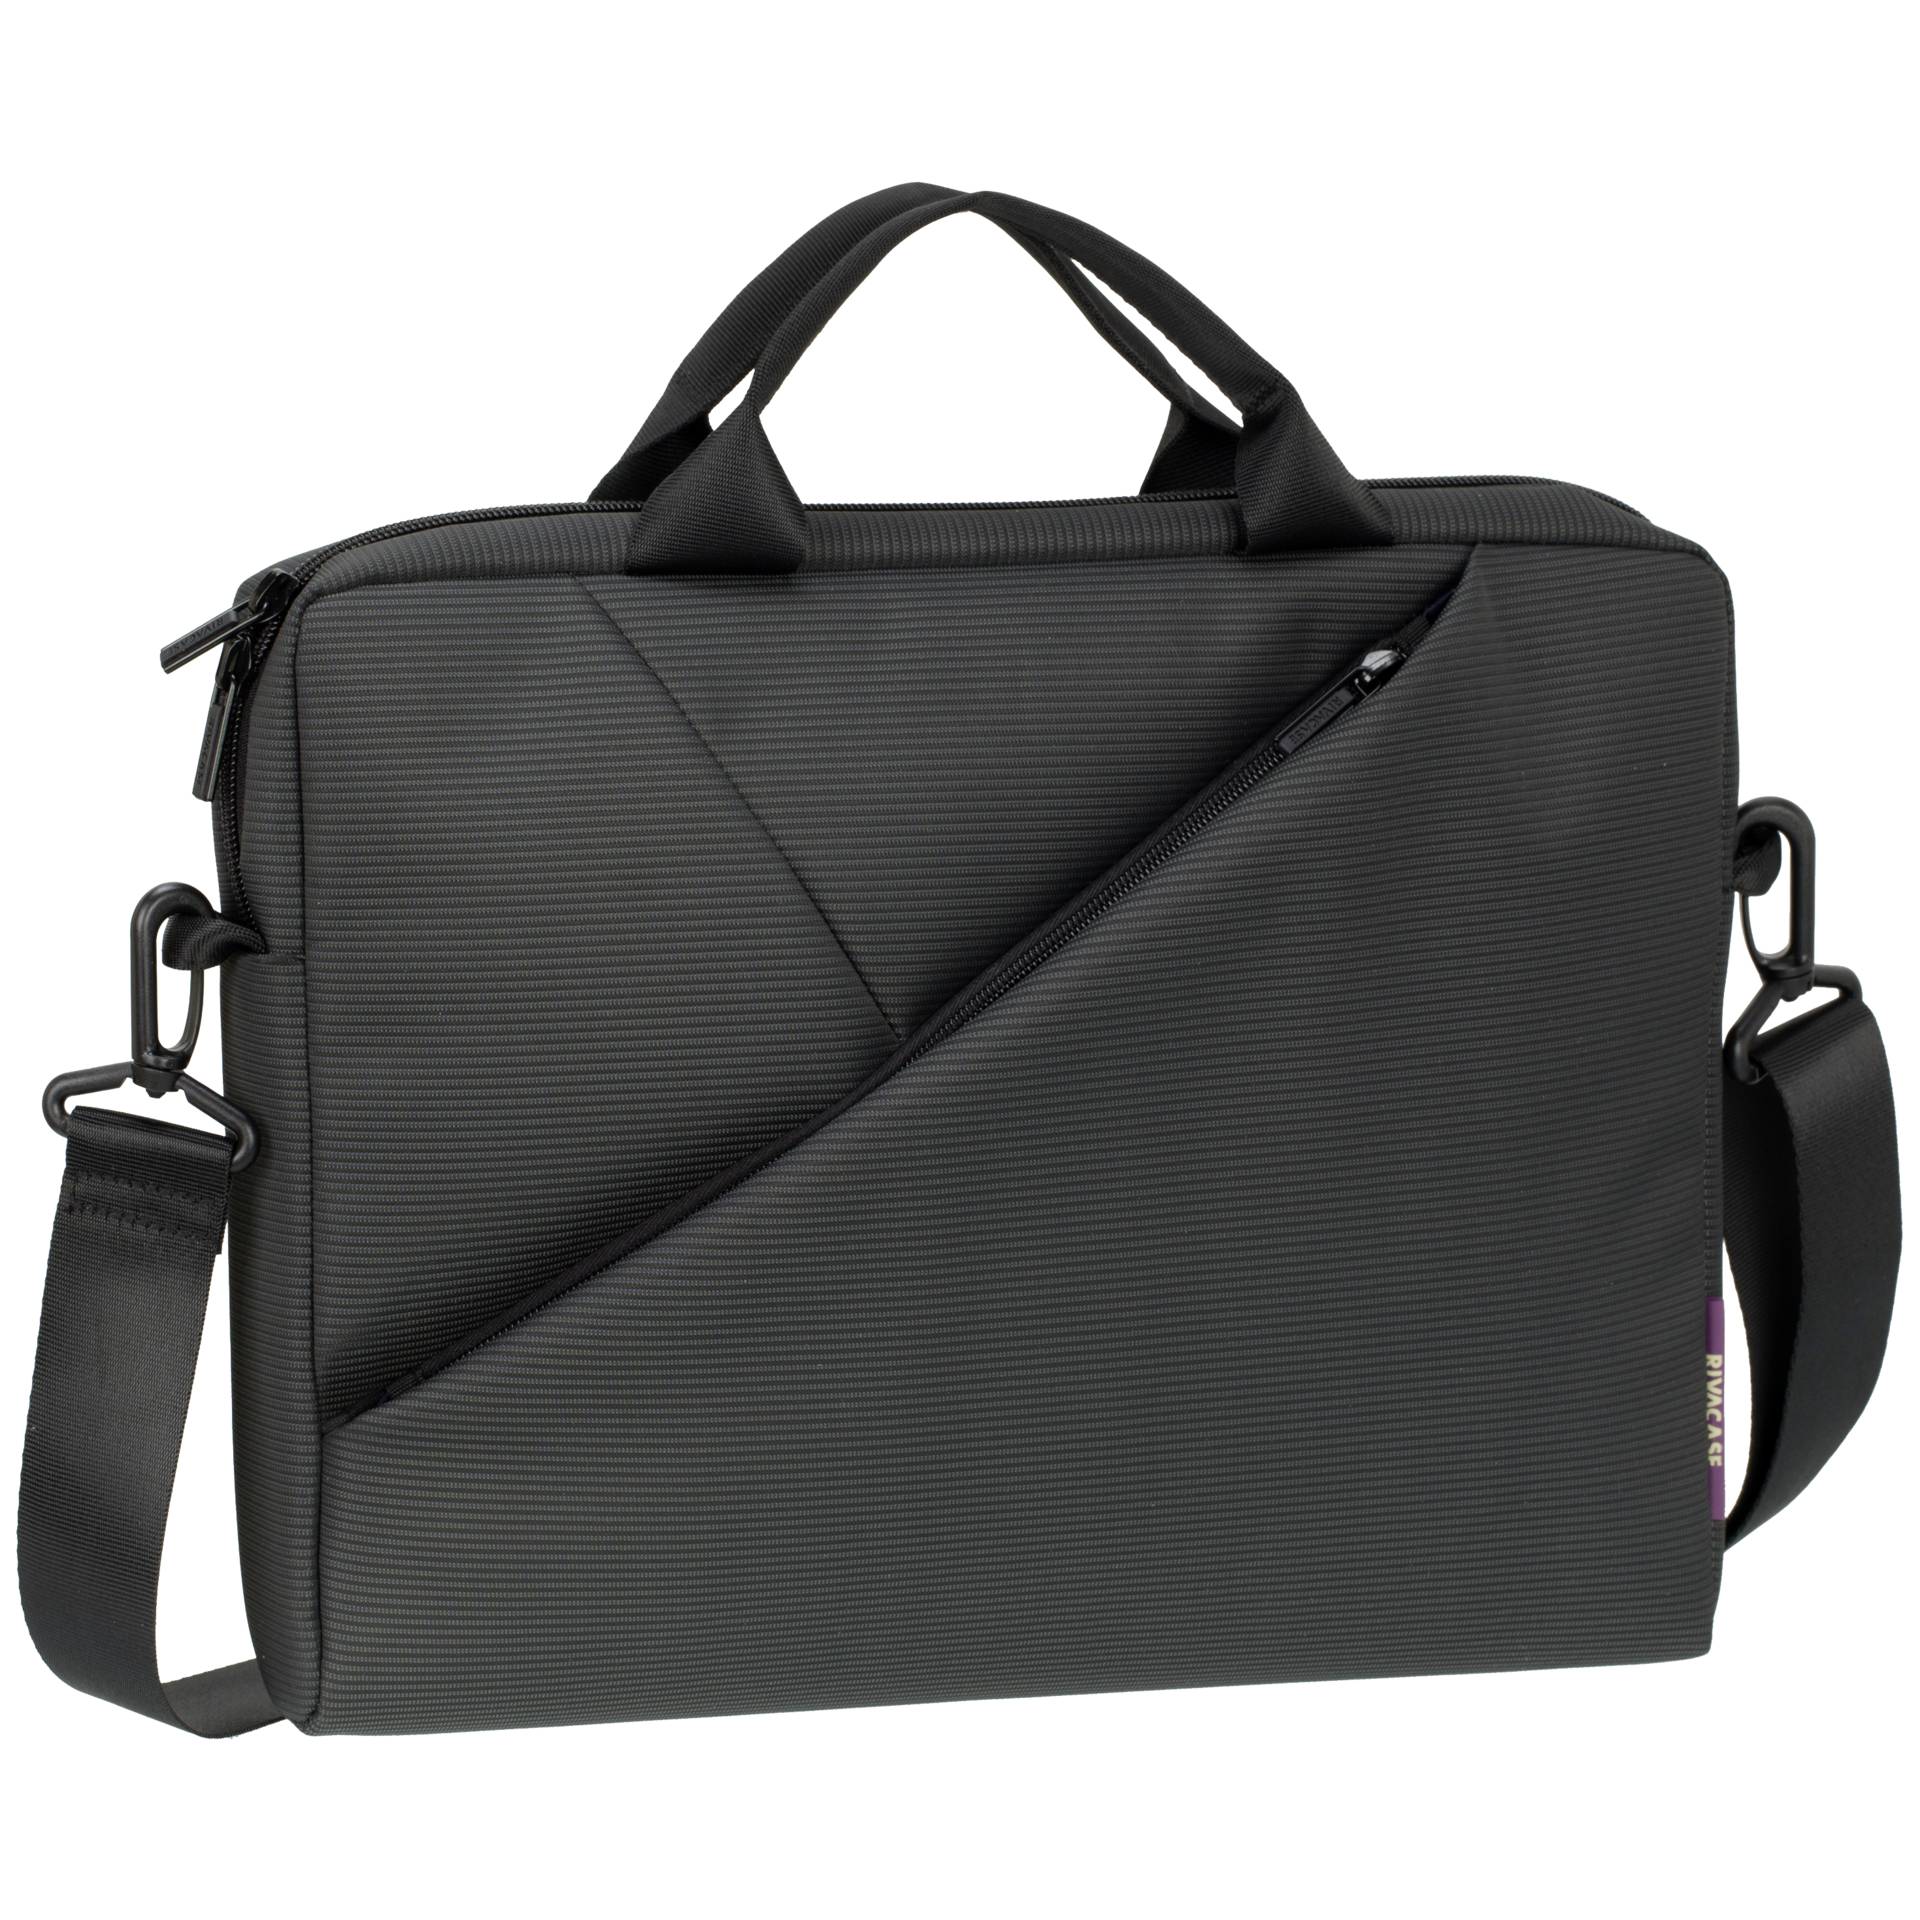 RivaCase 8730 hochwertige Notebooktasche, Messenger Bag grau